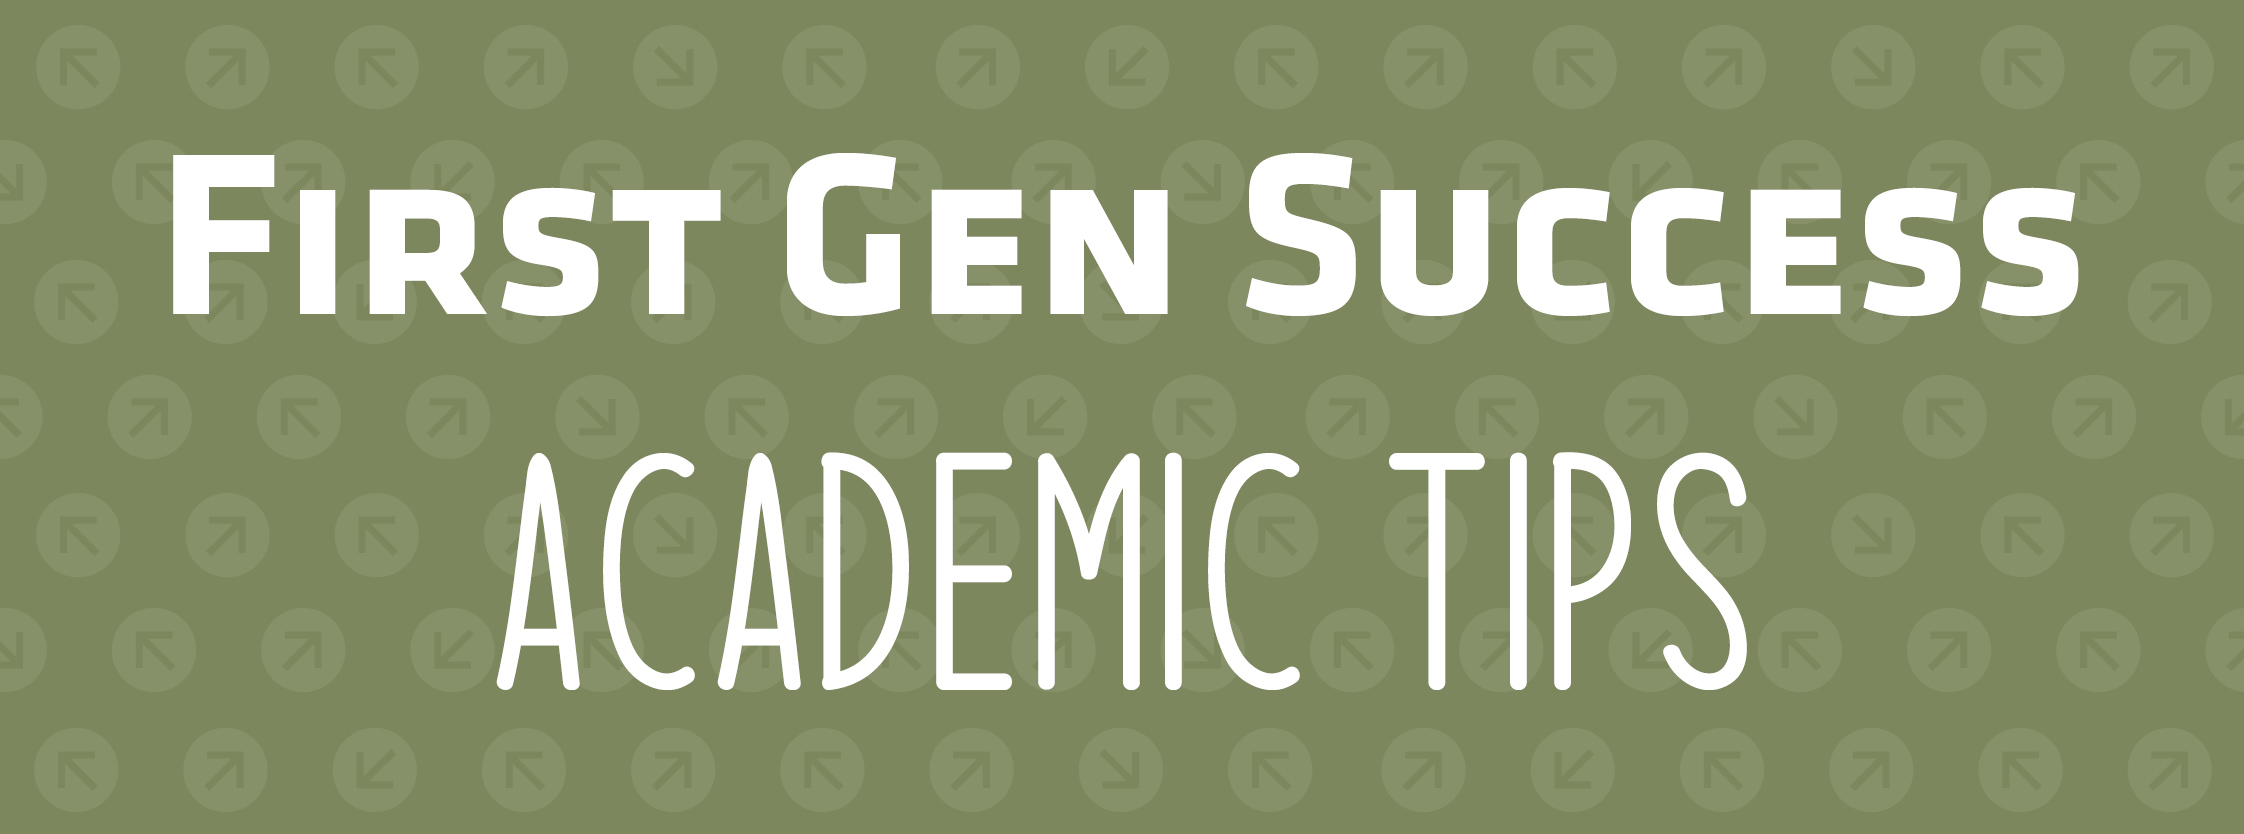 First Gen Success | Academic Tips